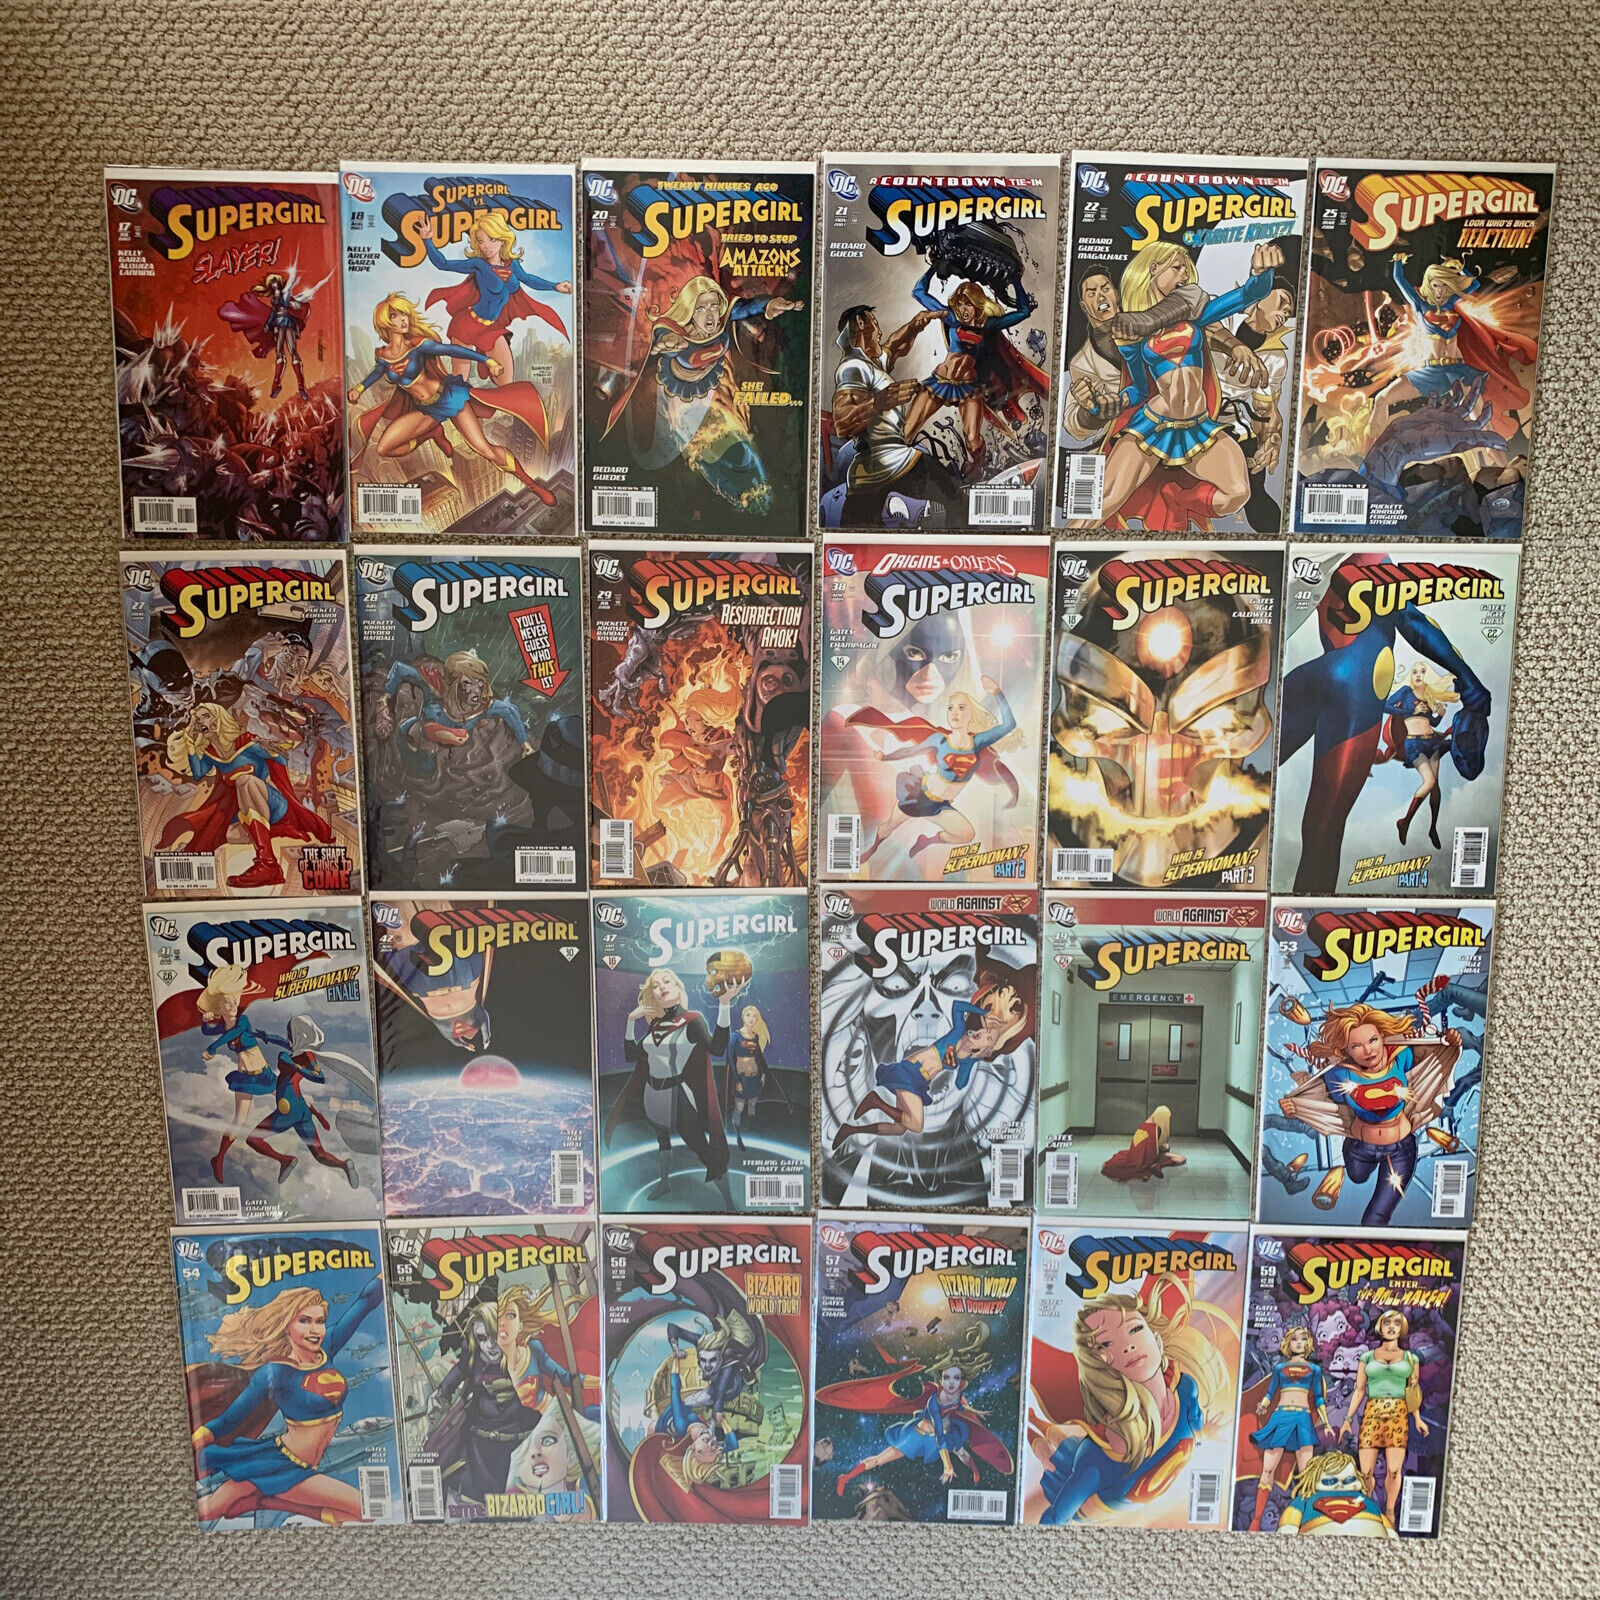 Supergirl 2005-2011 Volume 5, 38 Issues (see details below)